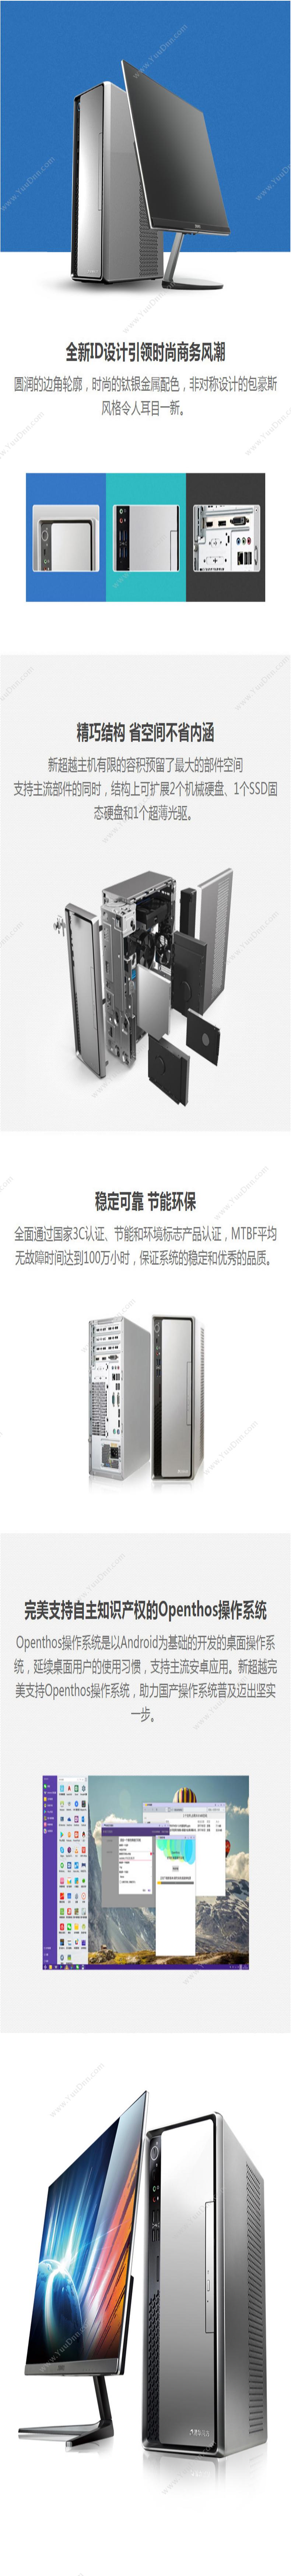 清华同方 TongFang 超扬A3500-0010（21.5寸显示器） 台式机 台式电脑套机